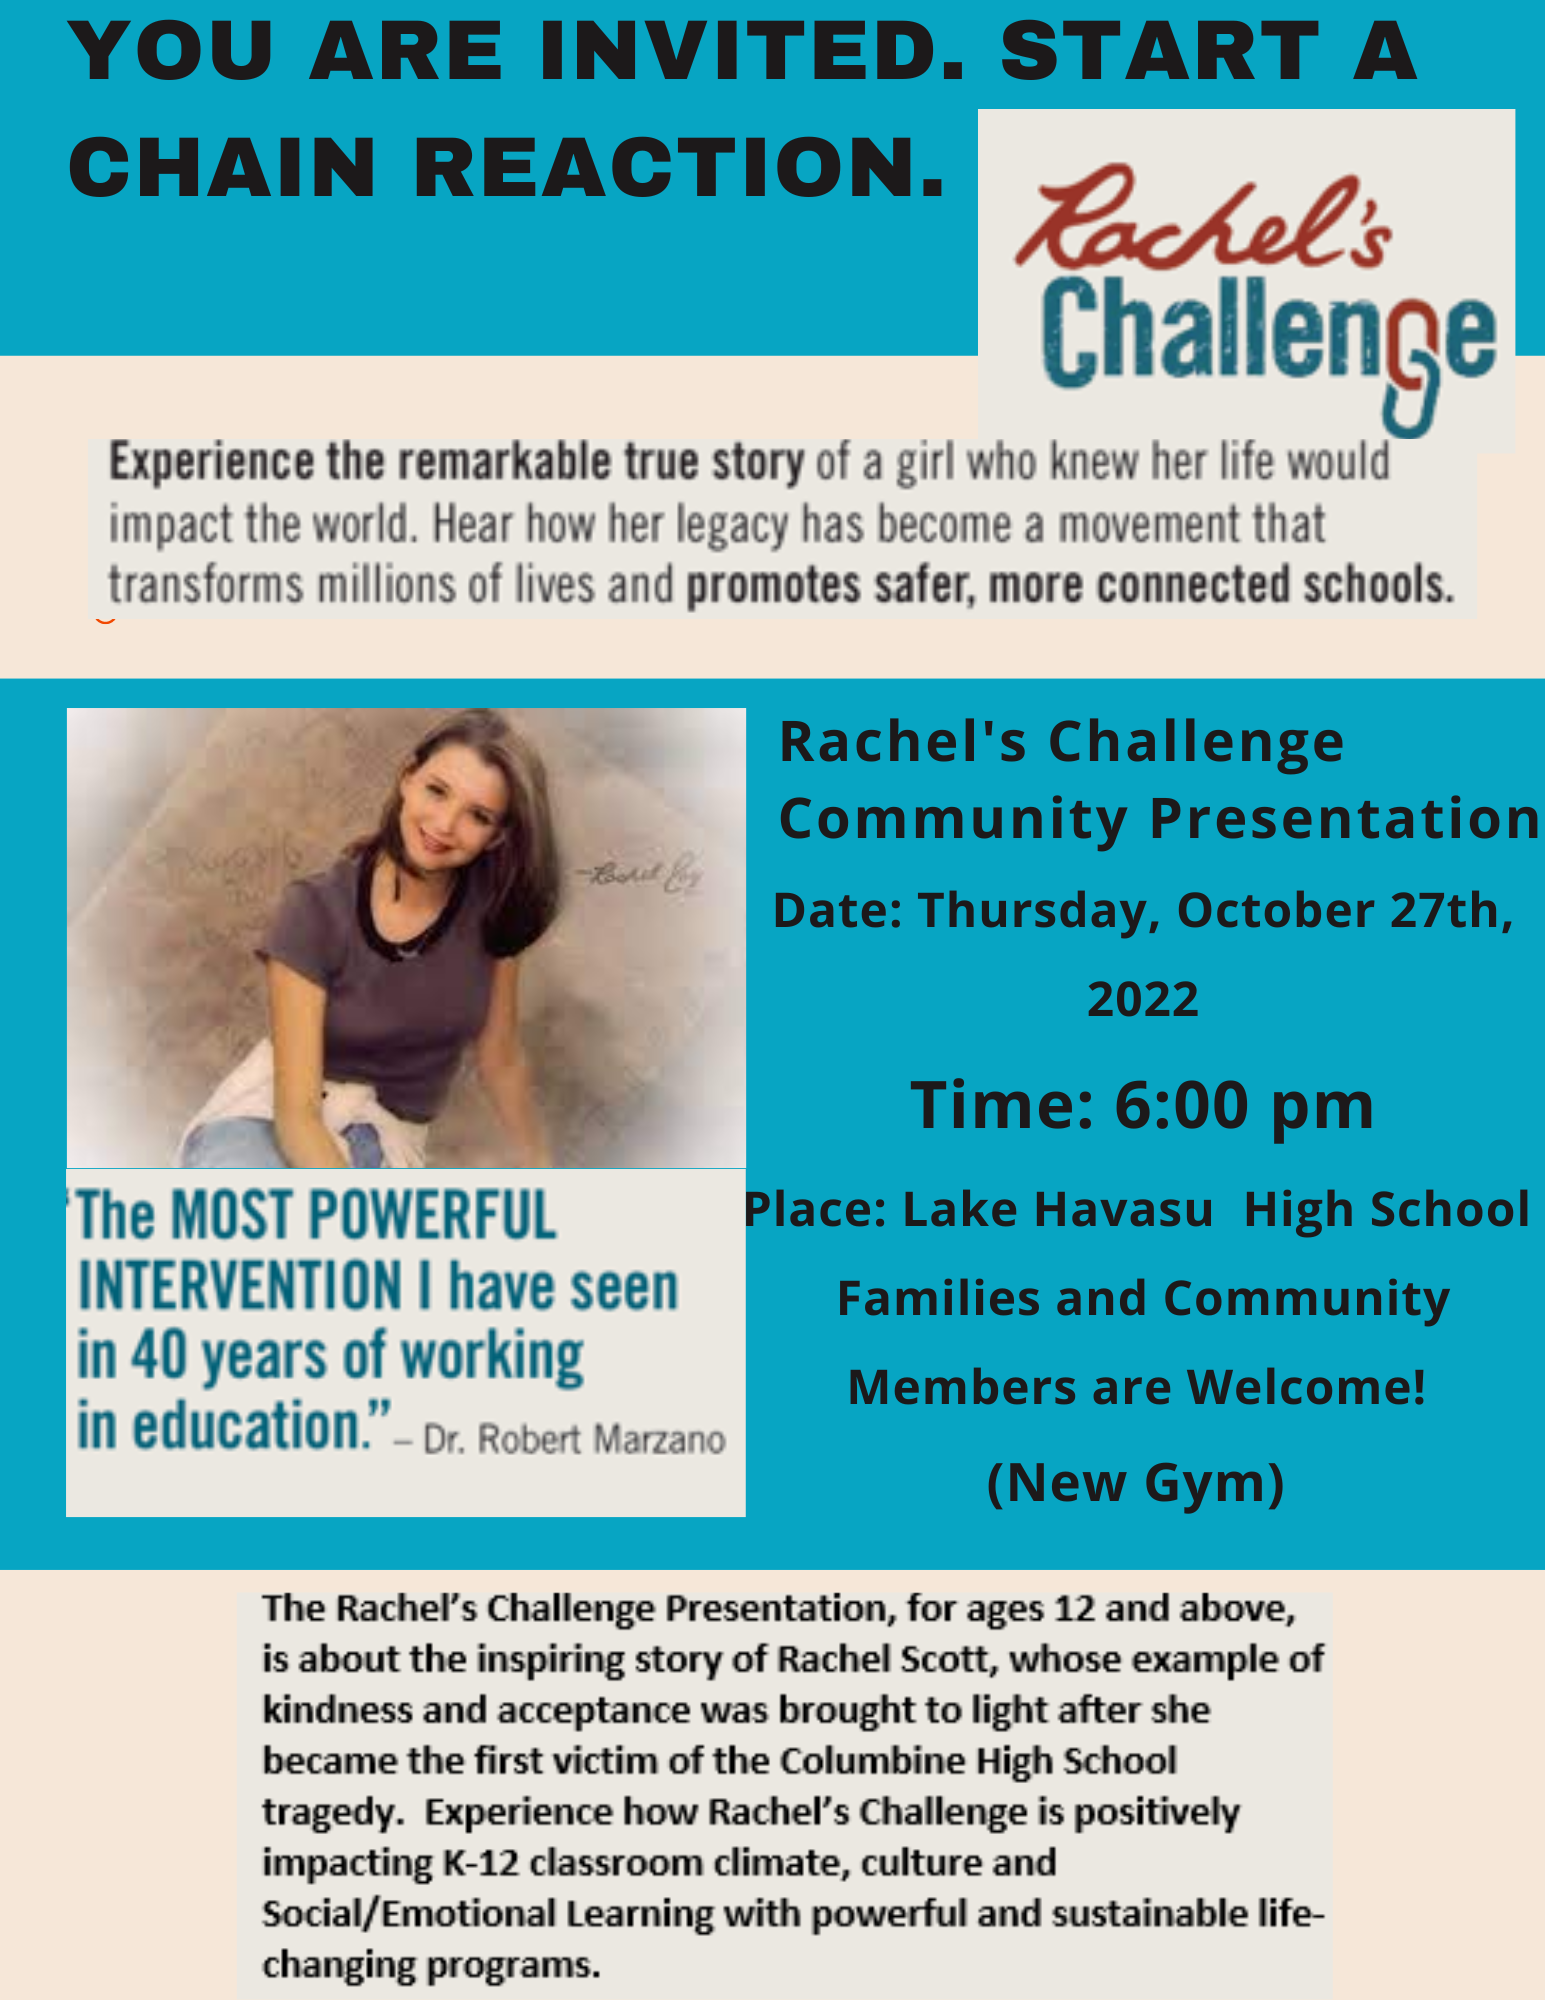 Rachel’s Challenge